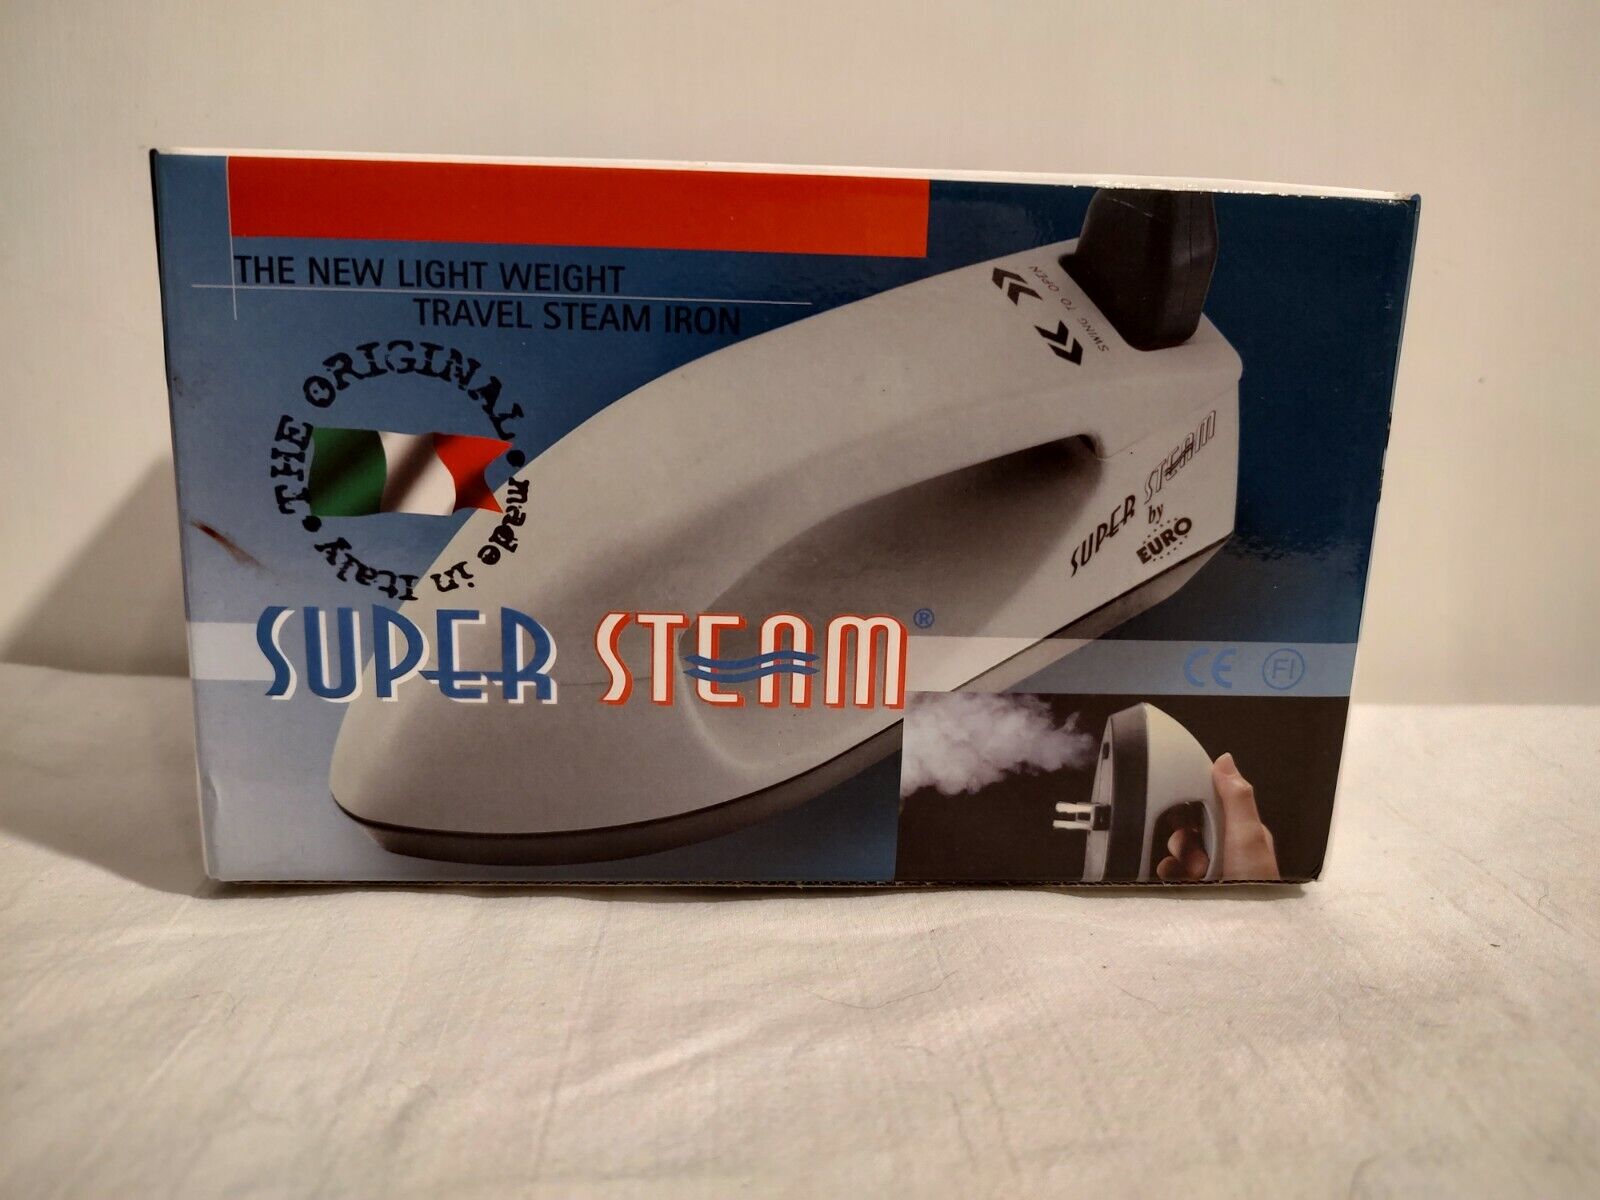 Super Steam Lightweight Travel Steam Iron Made in Italy